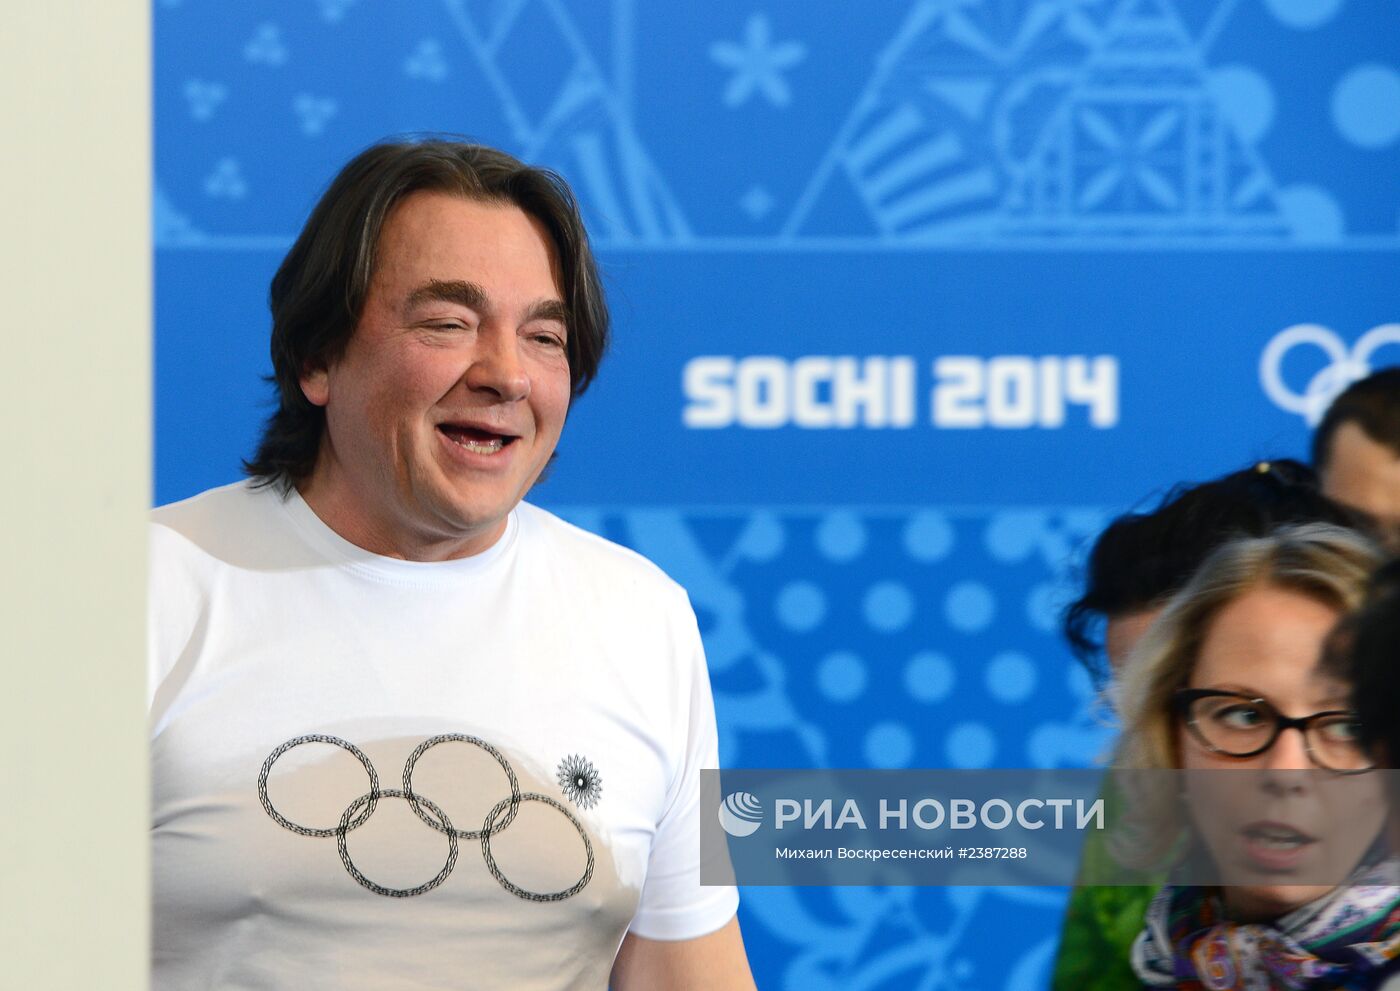 Пресс-конференция К. Эрнста, посвященная закрытию XXII Олимпиады в Сочи